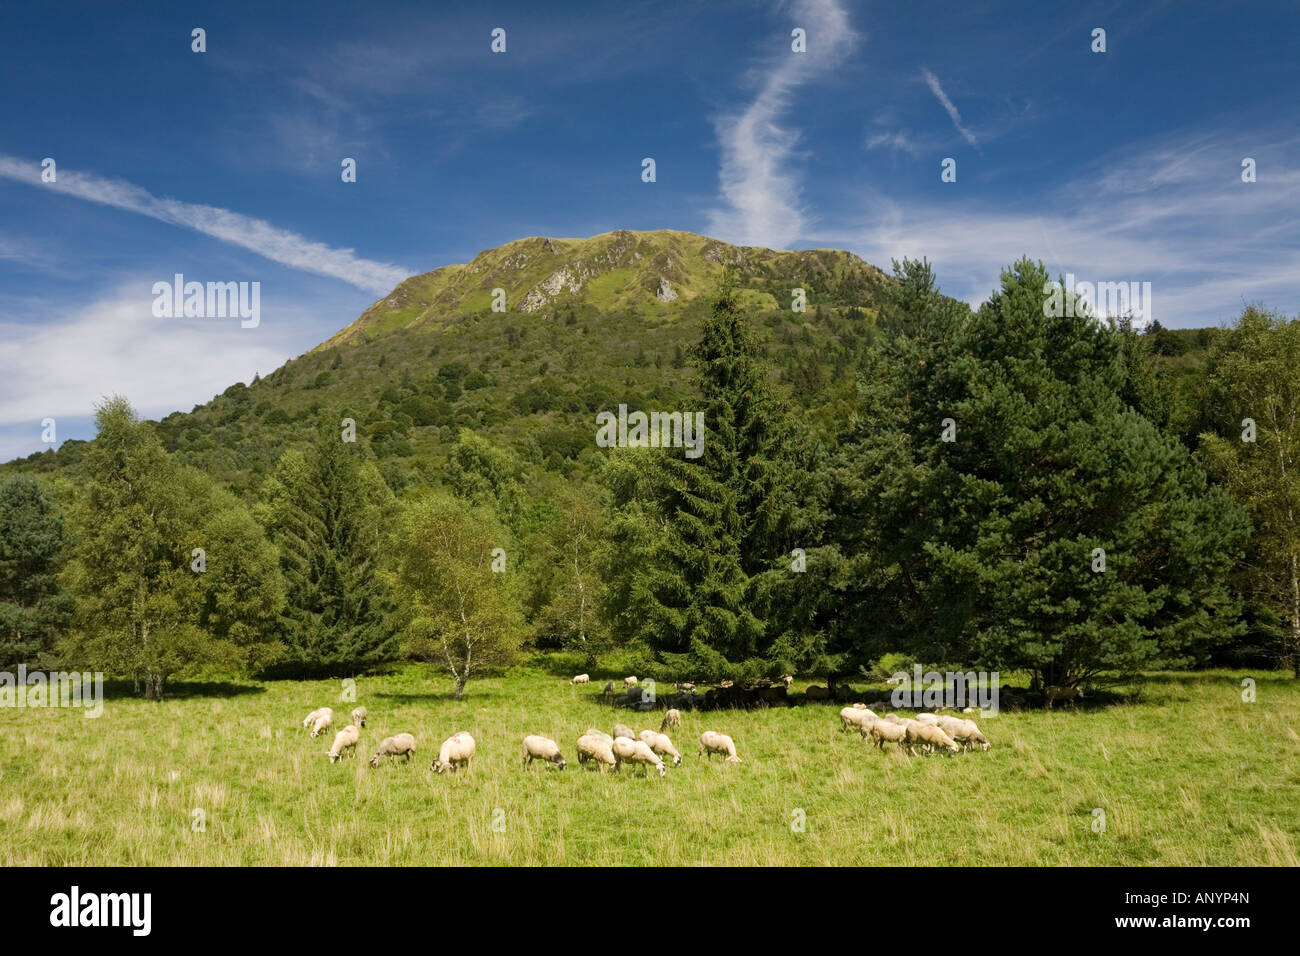 An extensive sheep breeding at the Puy de Dôme foot (France). Elevage extensif d'ovins (Ovis aries) au pied du Puy-de Dôme. Stock Photo